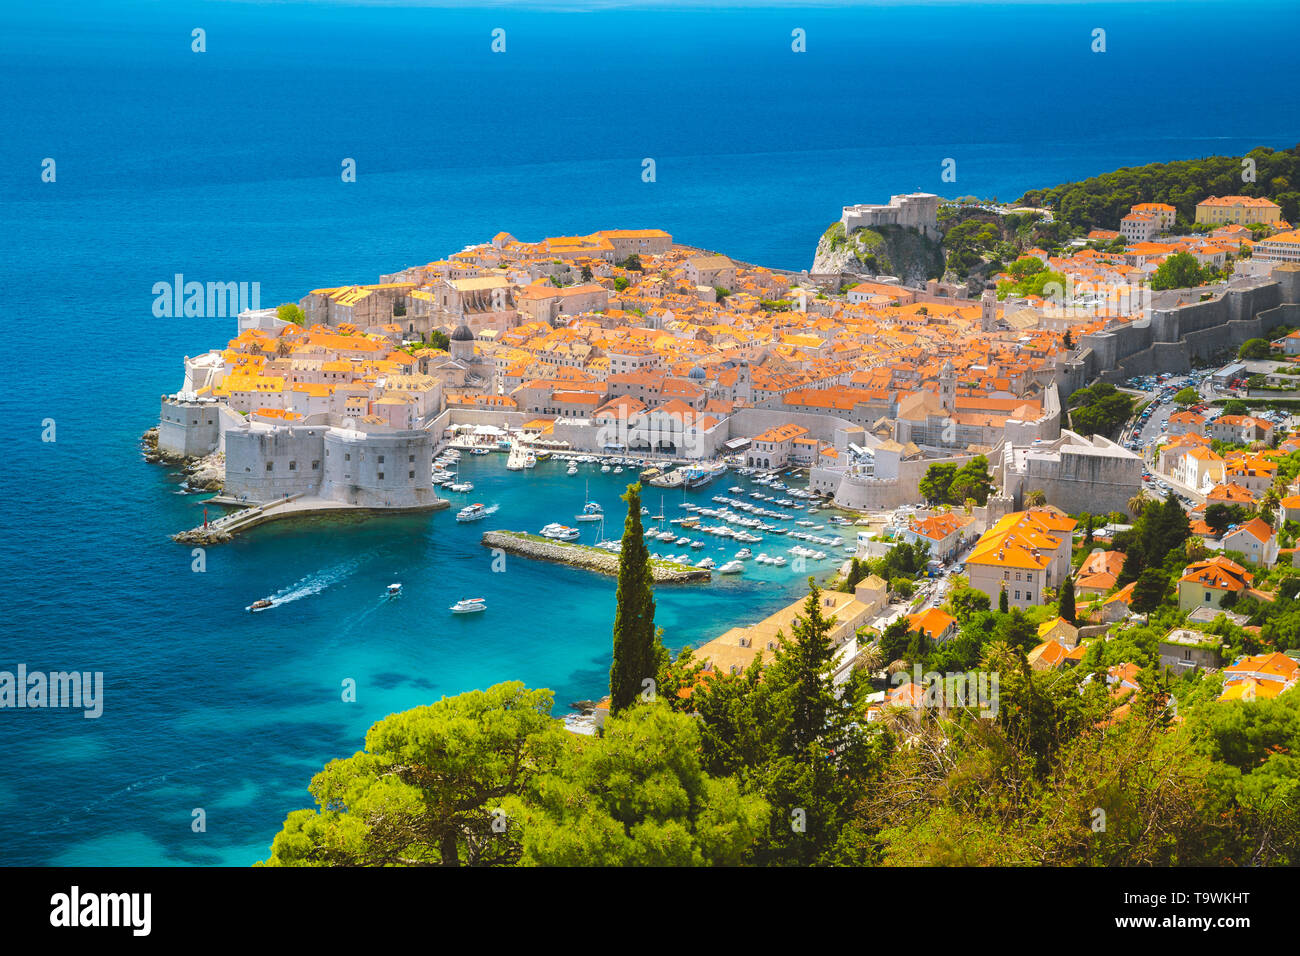 Panoramablick auf das luftbild der Altstadt von Dubrovnik, eines der bekanntesten touristischen Destinationen im Mittelmeer, von Srt Berg auf einem Stockfoto